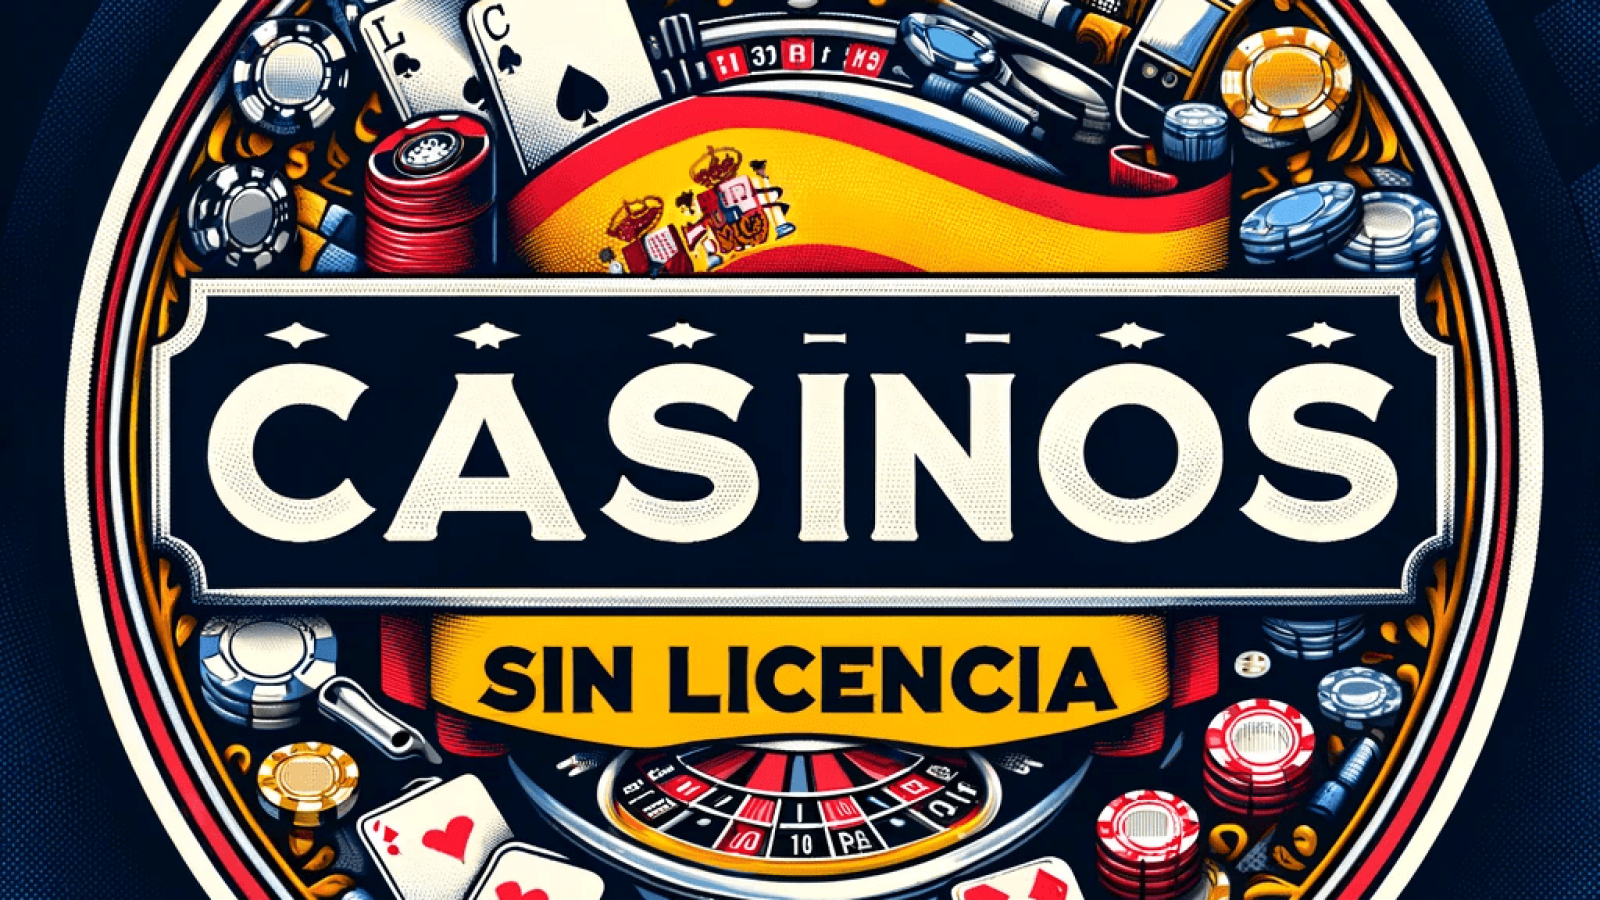 Casino con licencia española